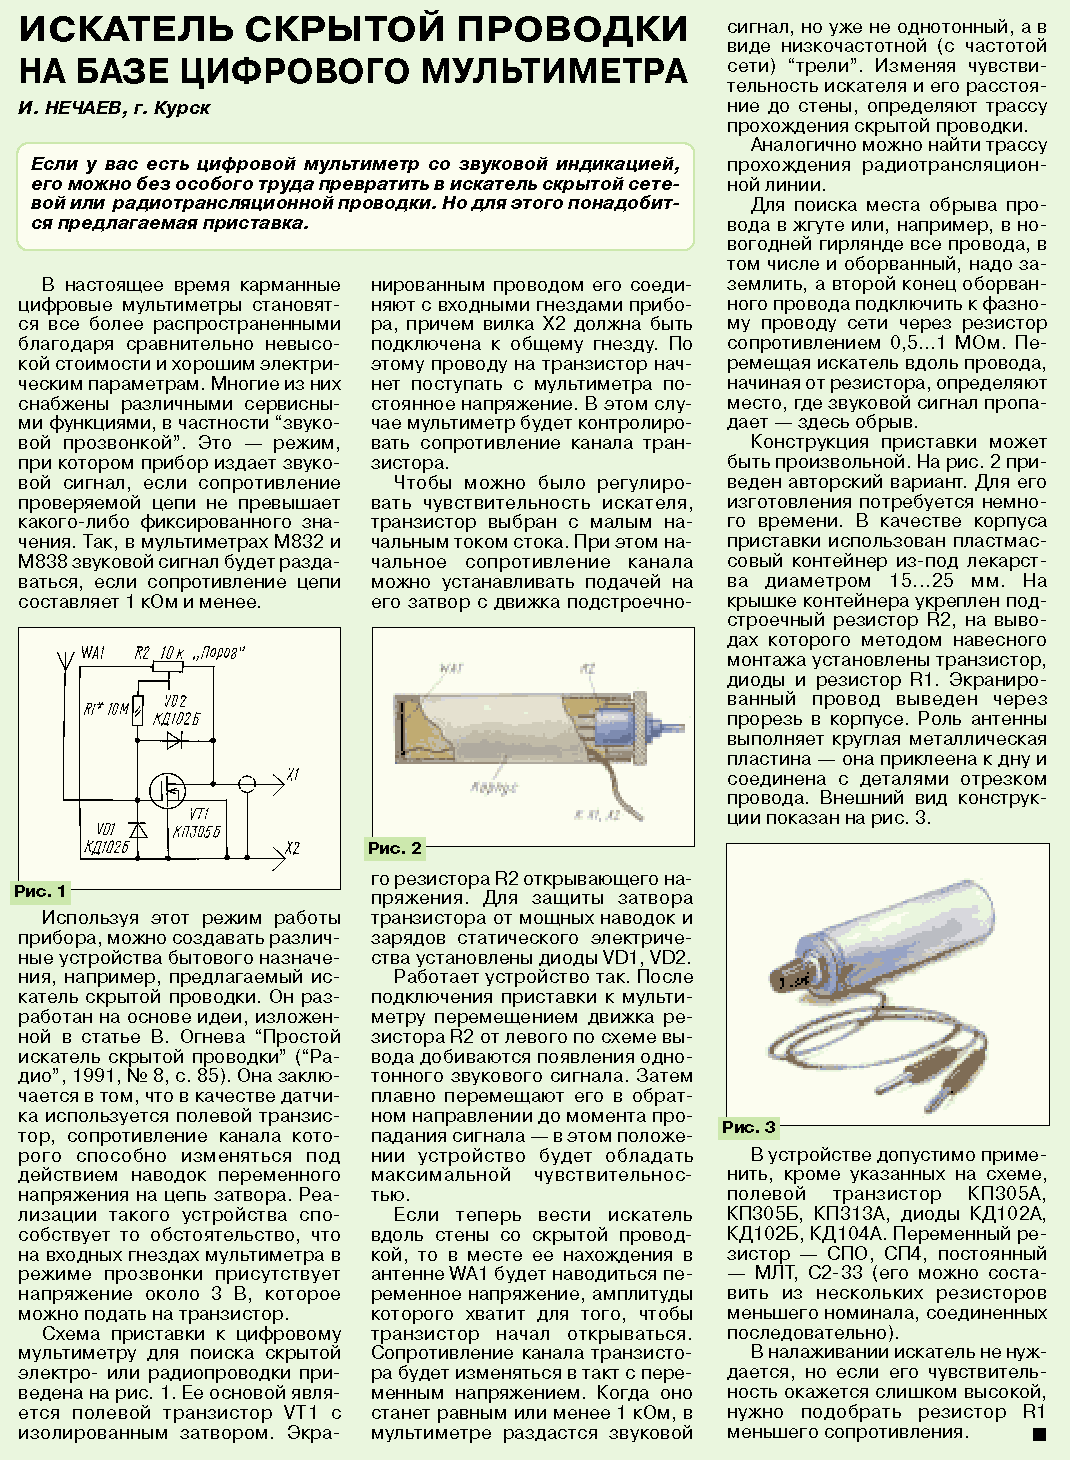 Указатель скрытой проводки: инструкция по использованию